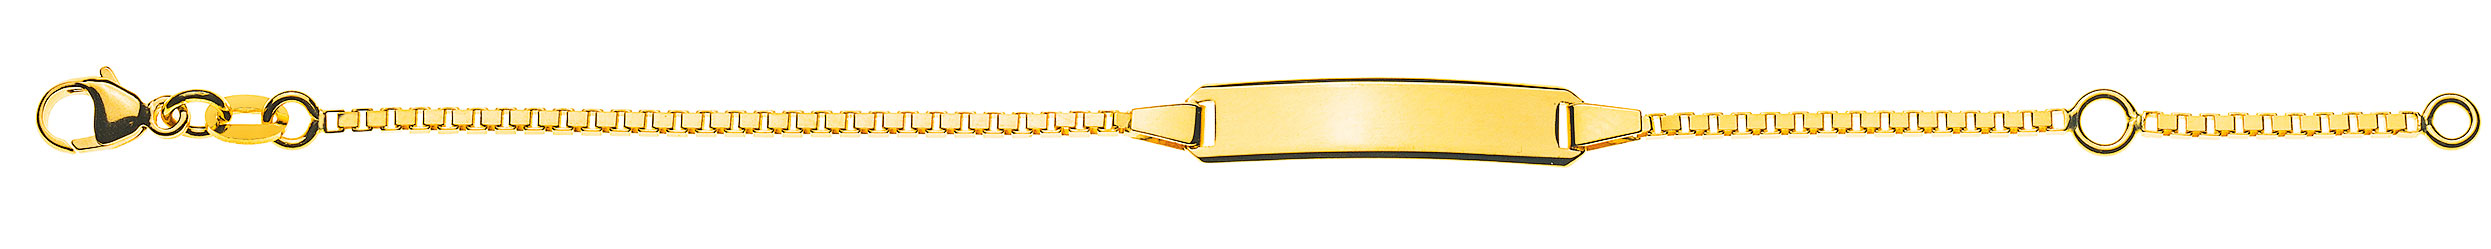 AURONOS Prestige ID-Bracelet en or jaune 18k Chaîne vénitienne diamantée 18cm